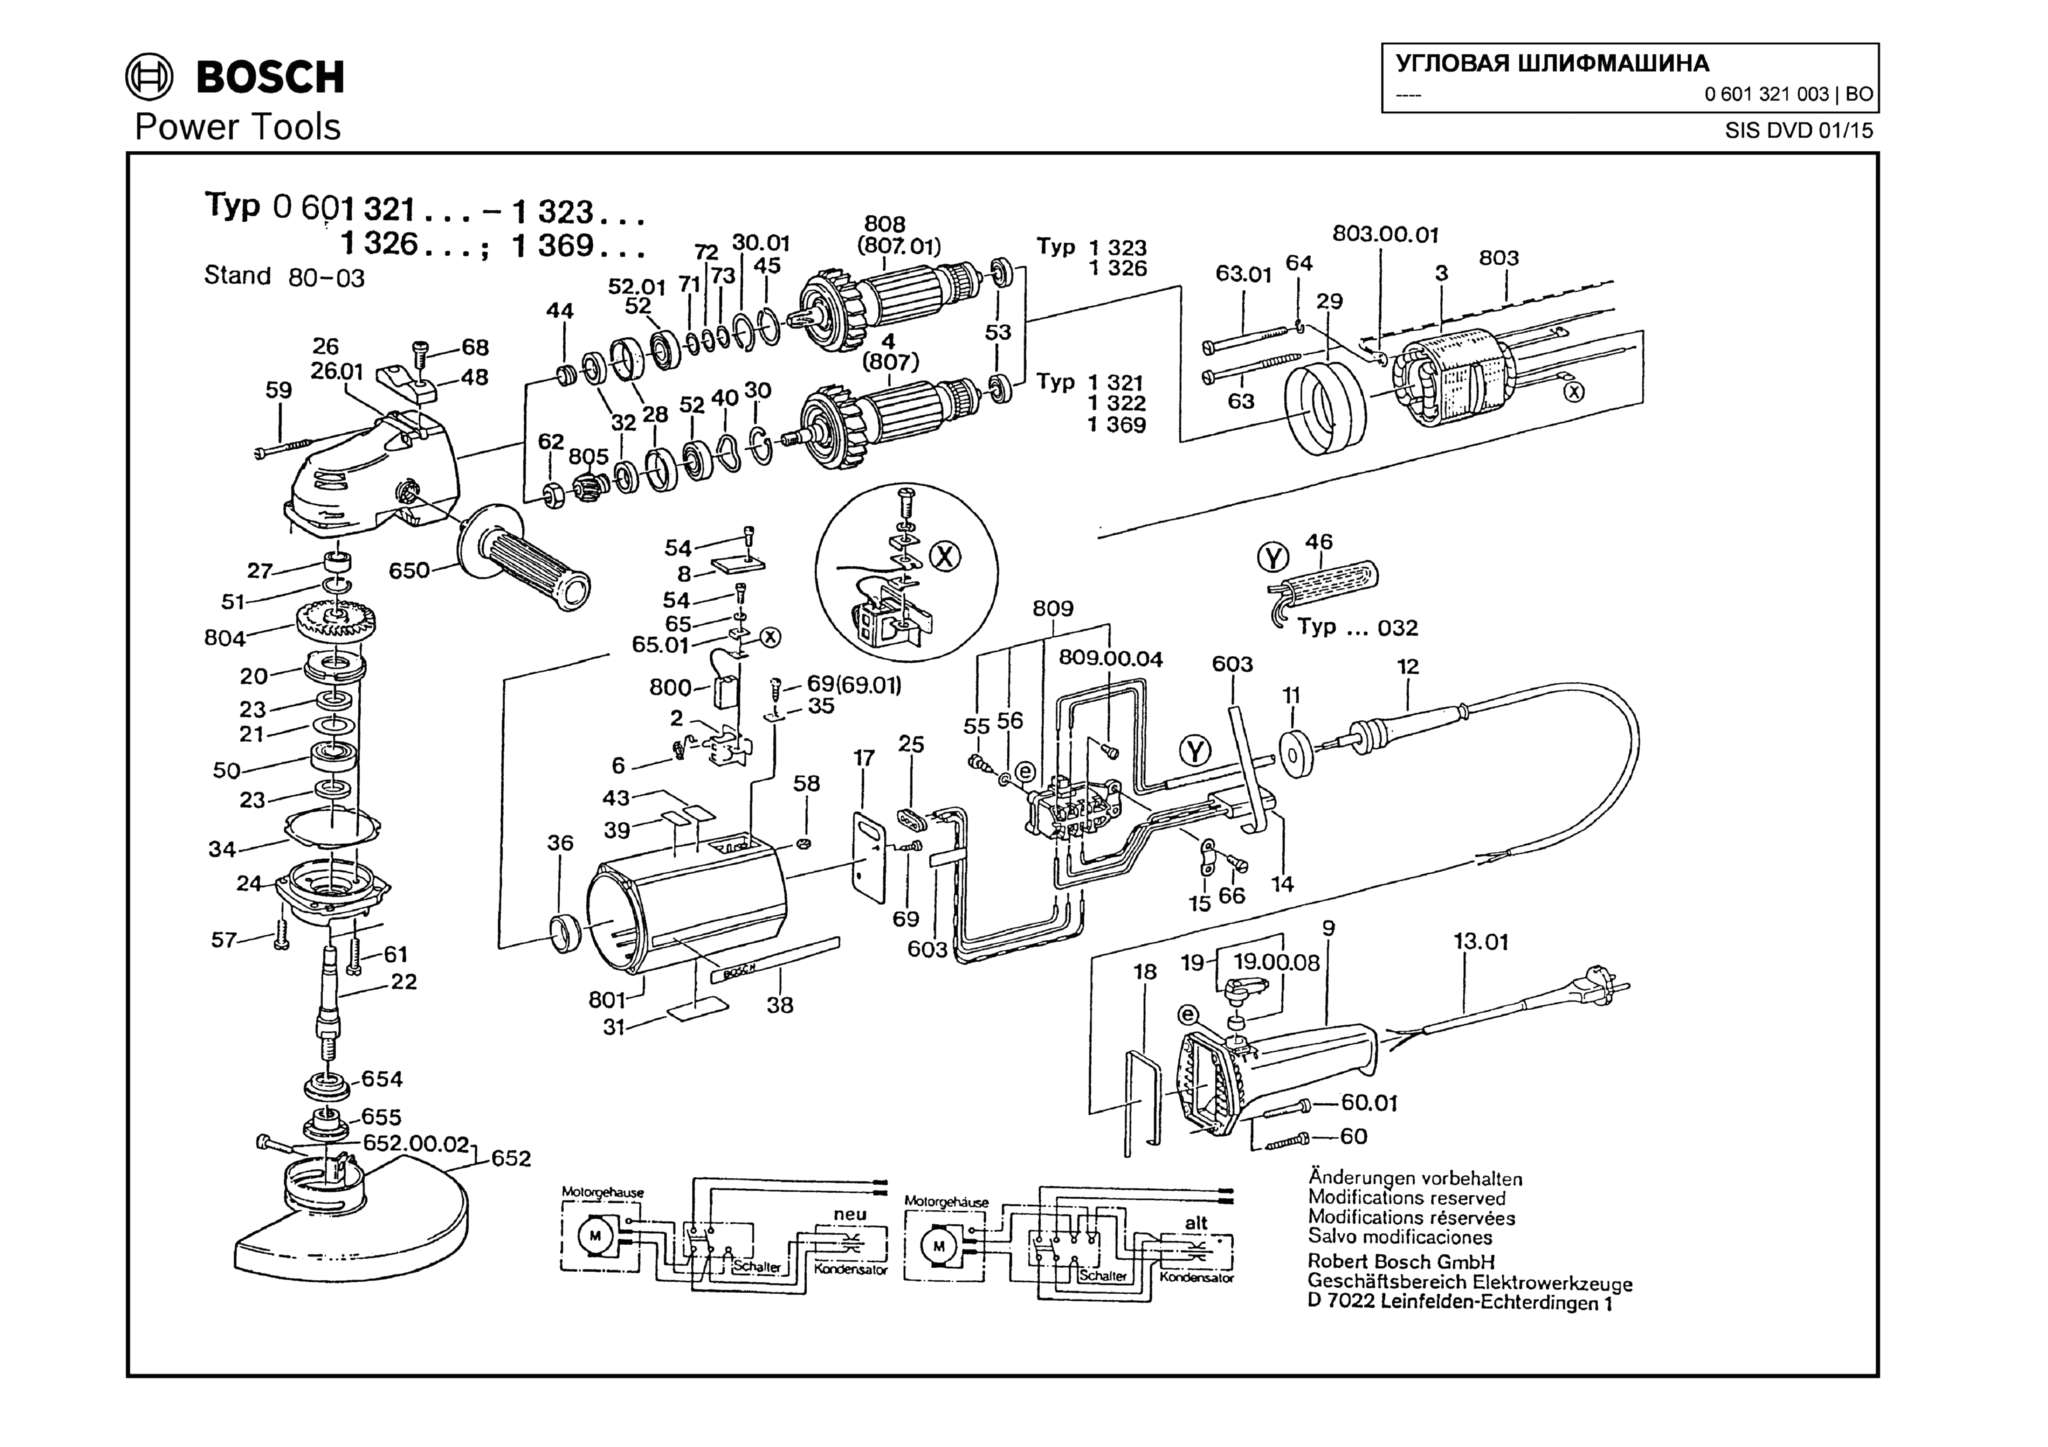 Запчасти, схема и деталировка Bosch (ТИП 0601321003)